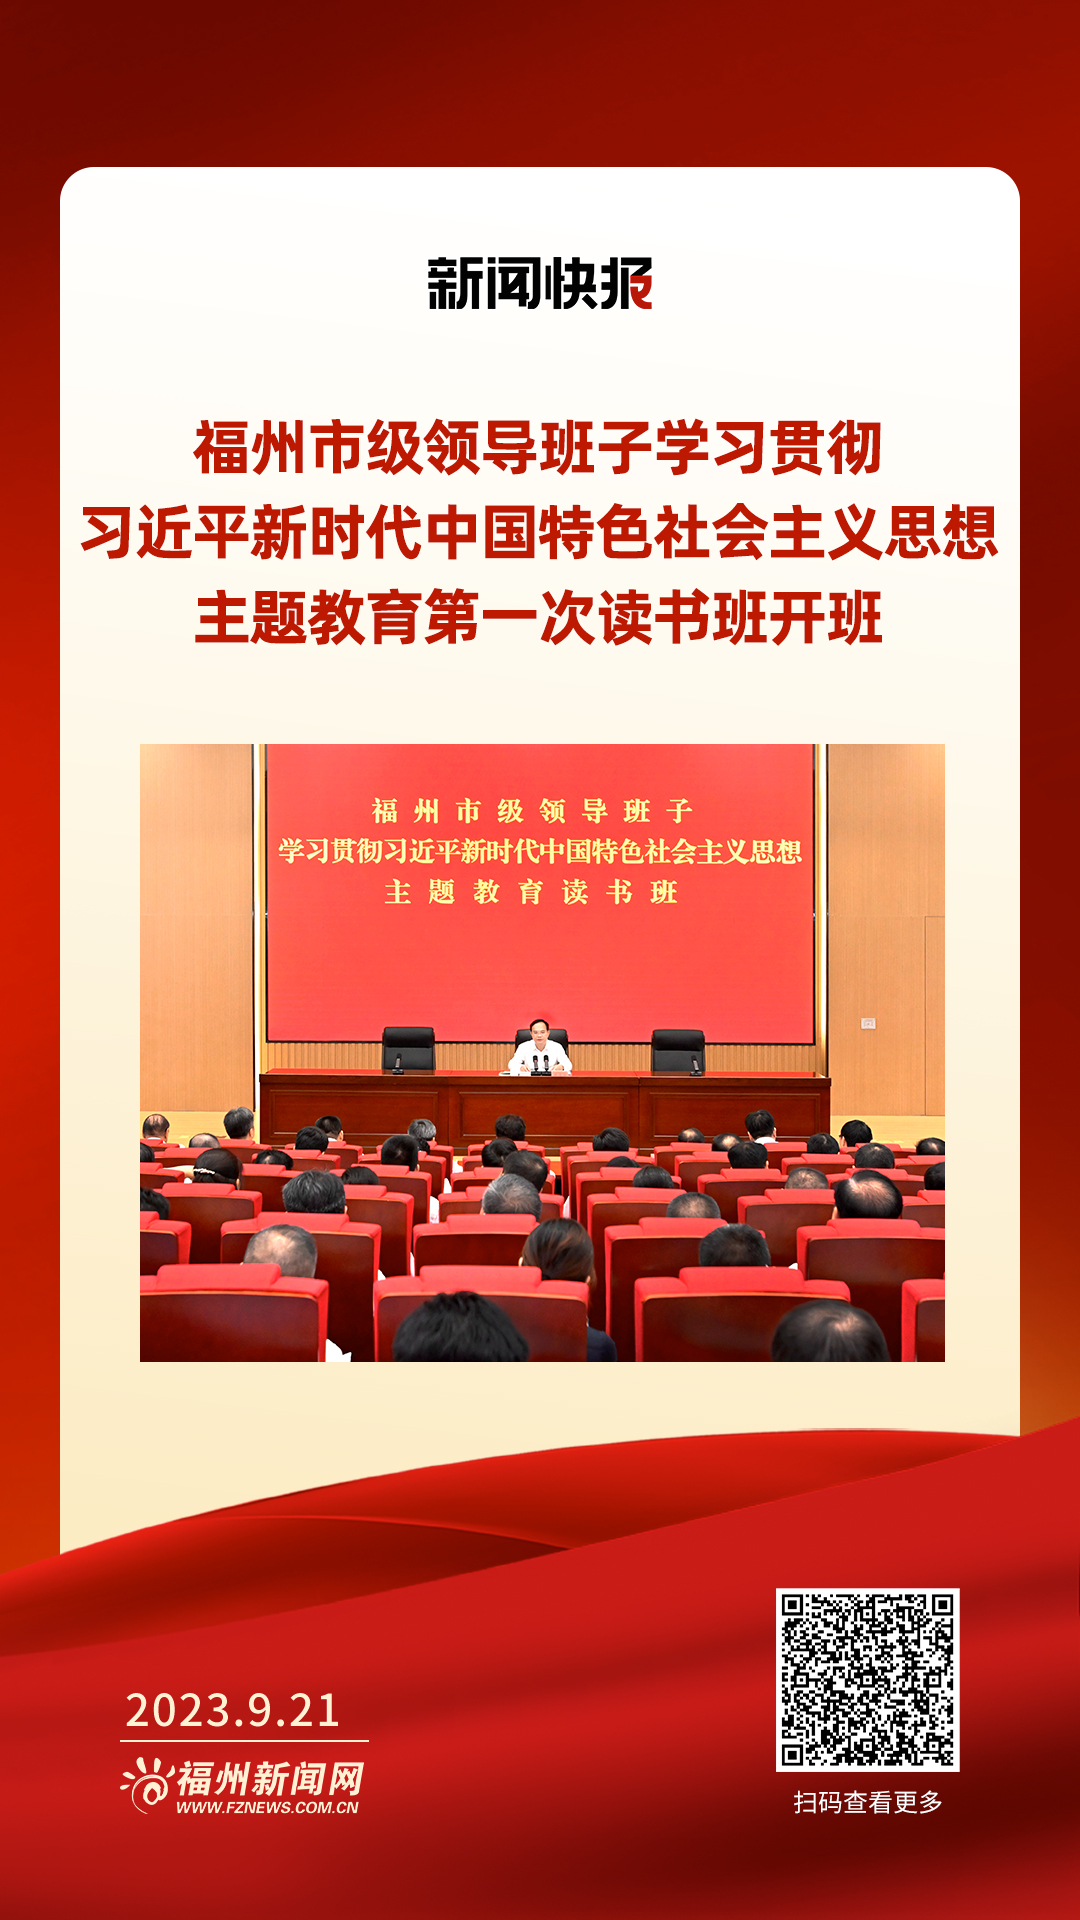 福州市级领导班子学习贯彻习近平新时代中国特色社会主义思想主题教育第一次读书班开班